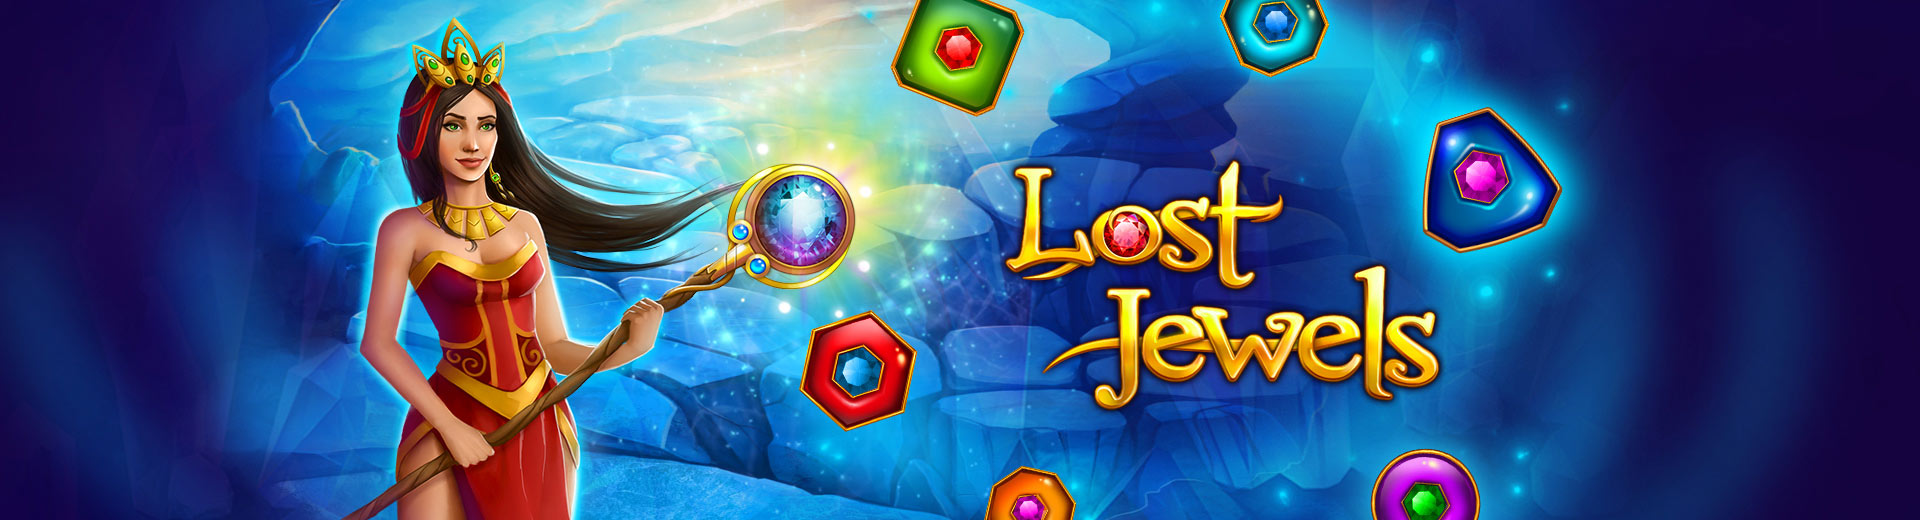 Lost jewels